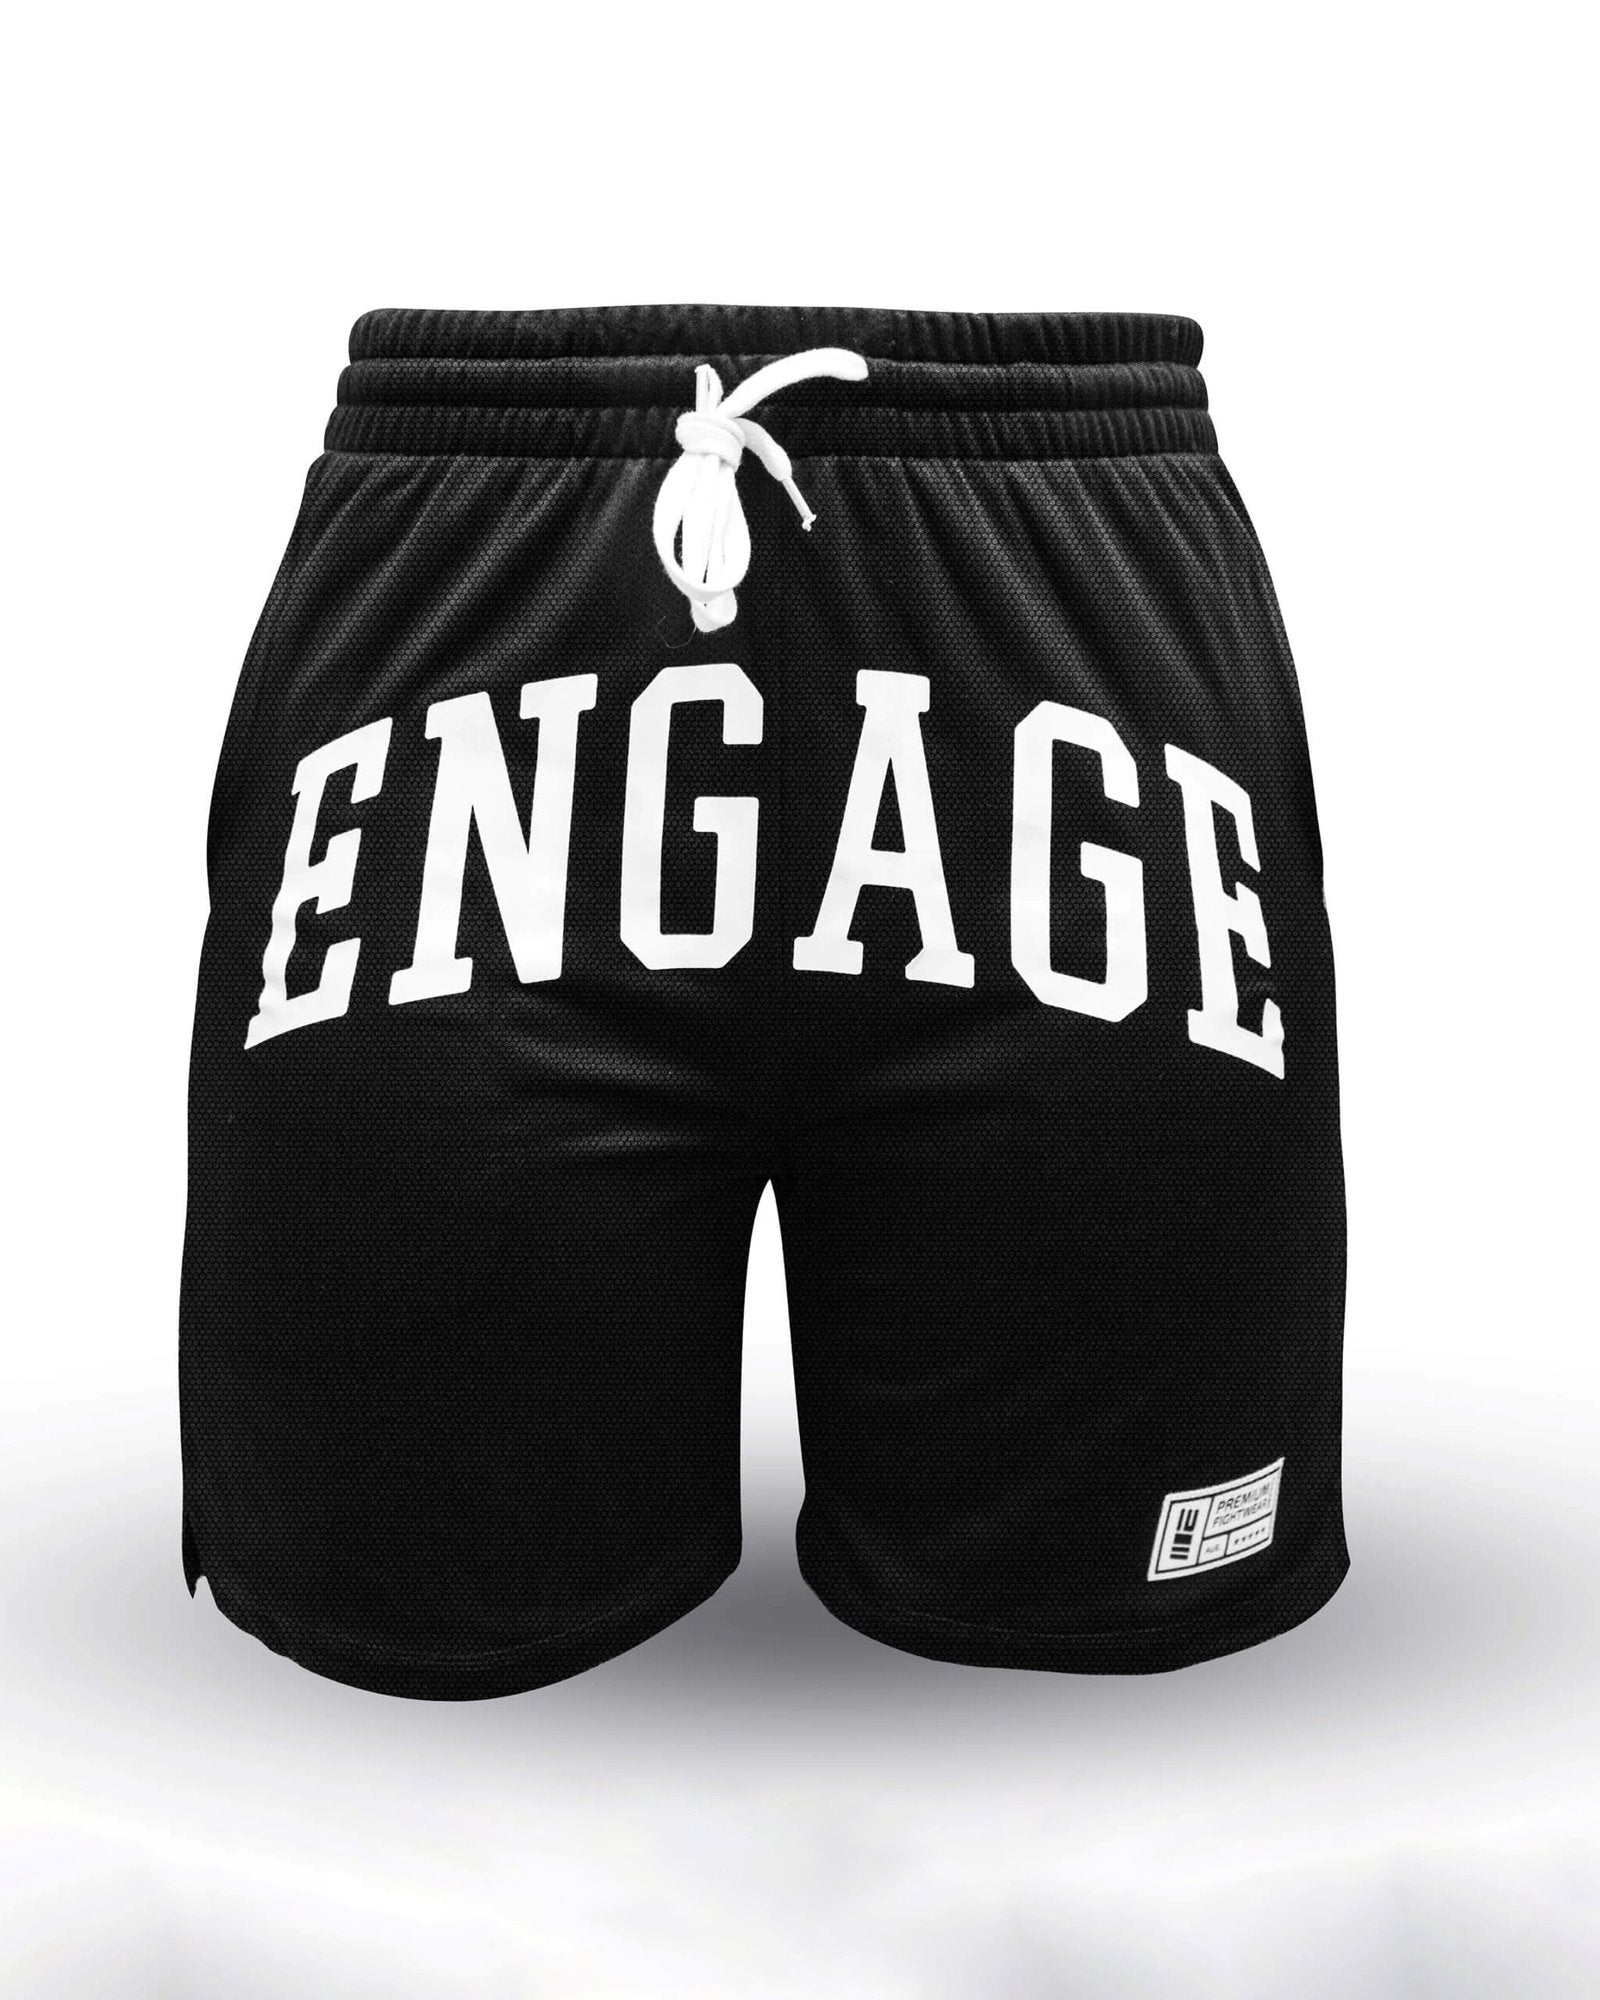 Engage Mesh Shorts